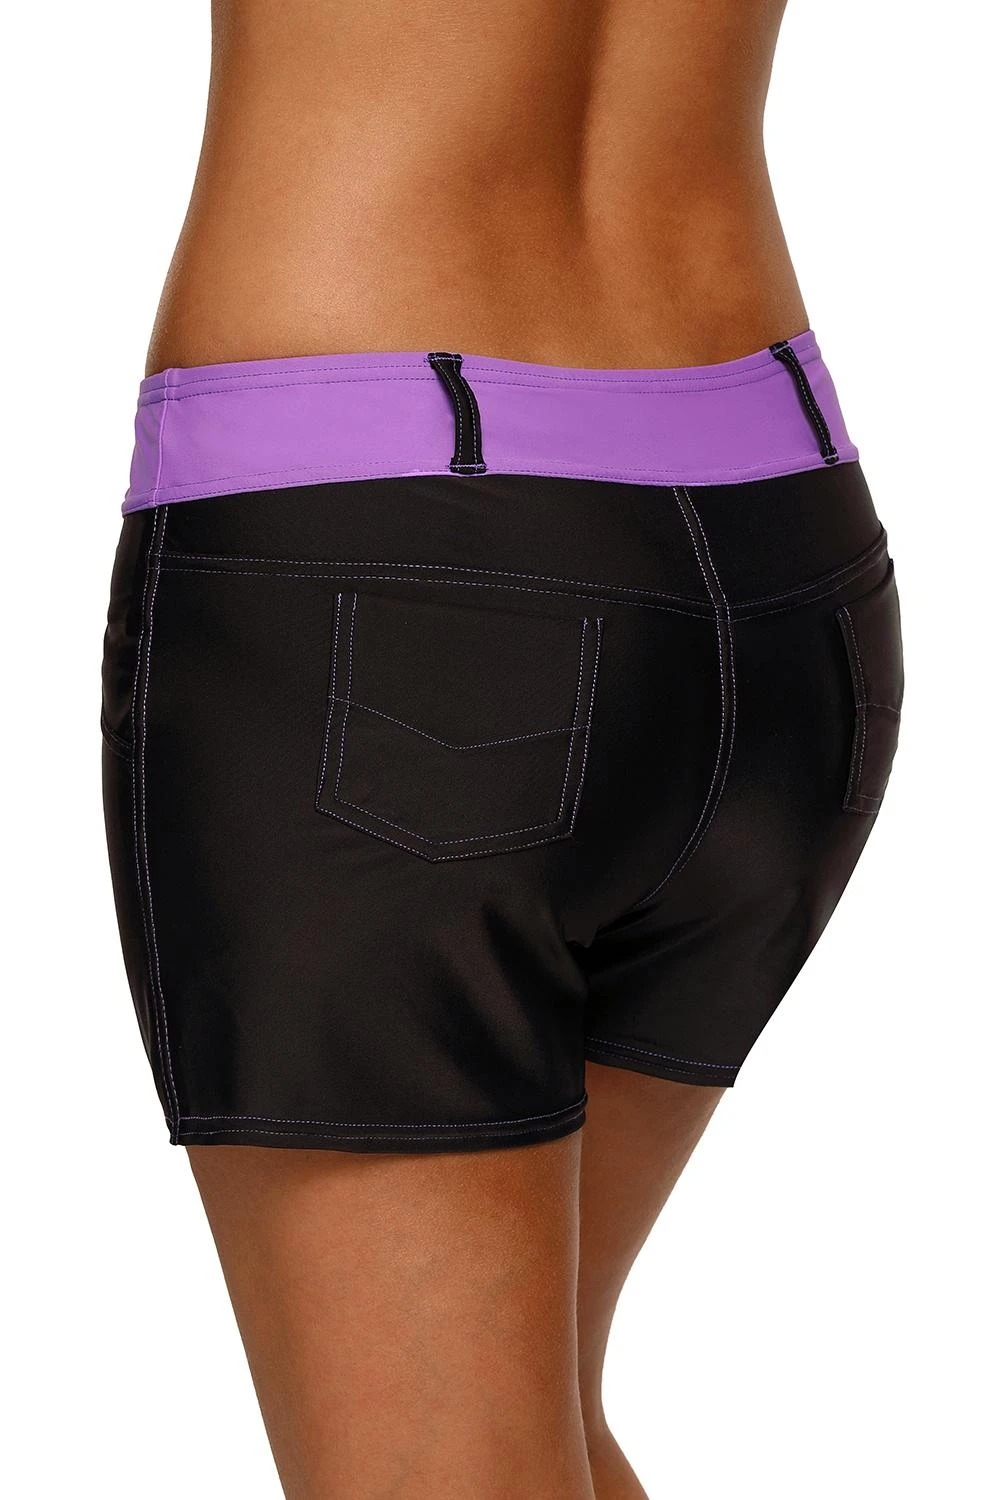 紫色腰带人造牛仔运动短裤 LC410460